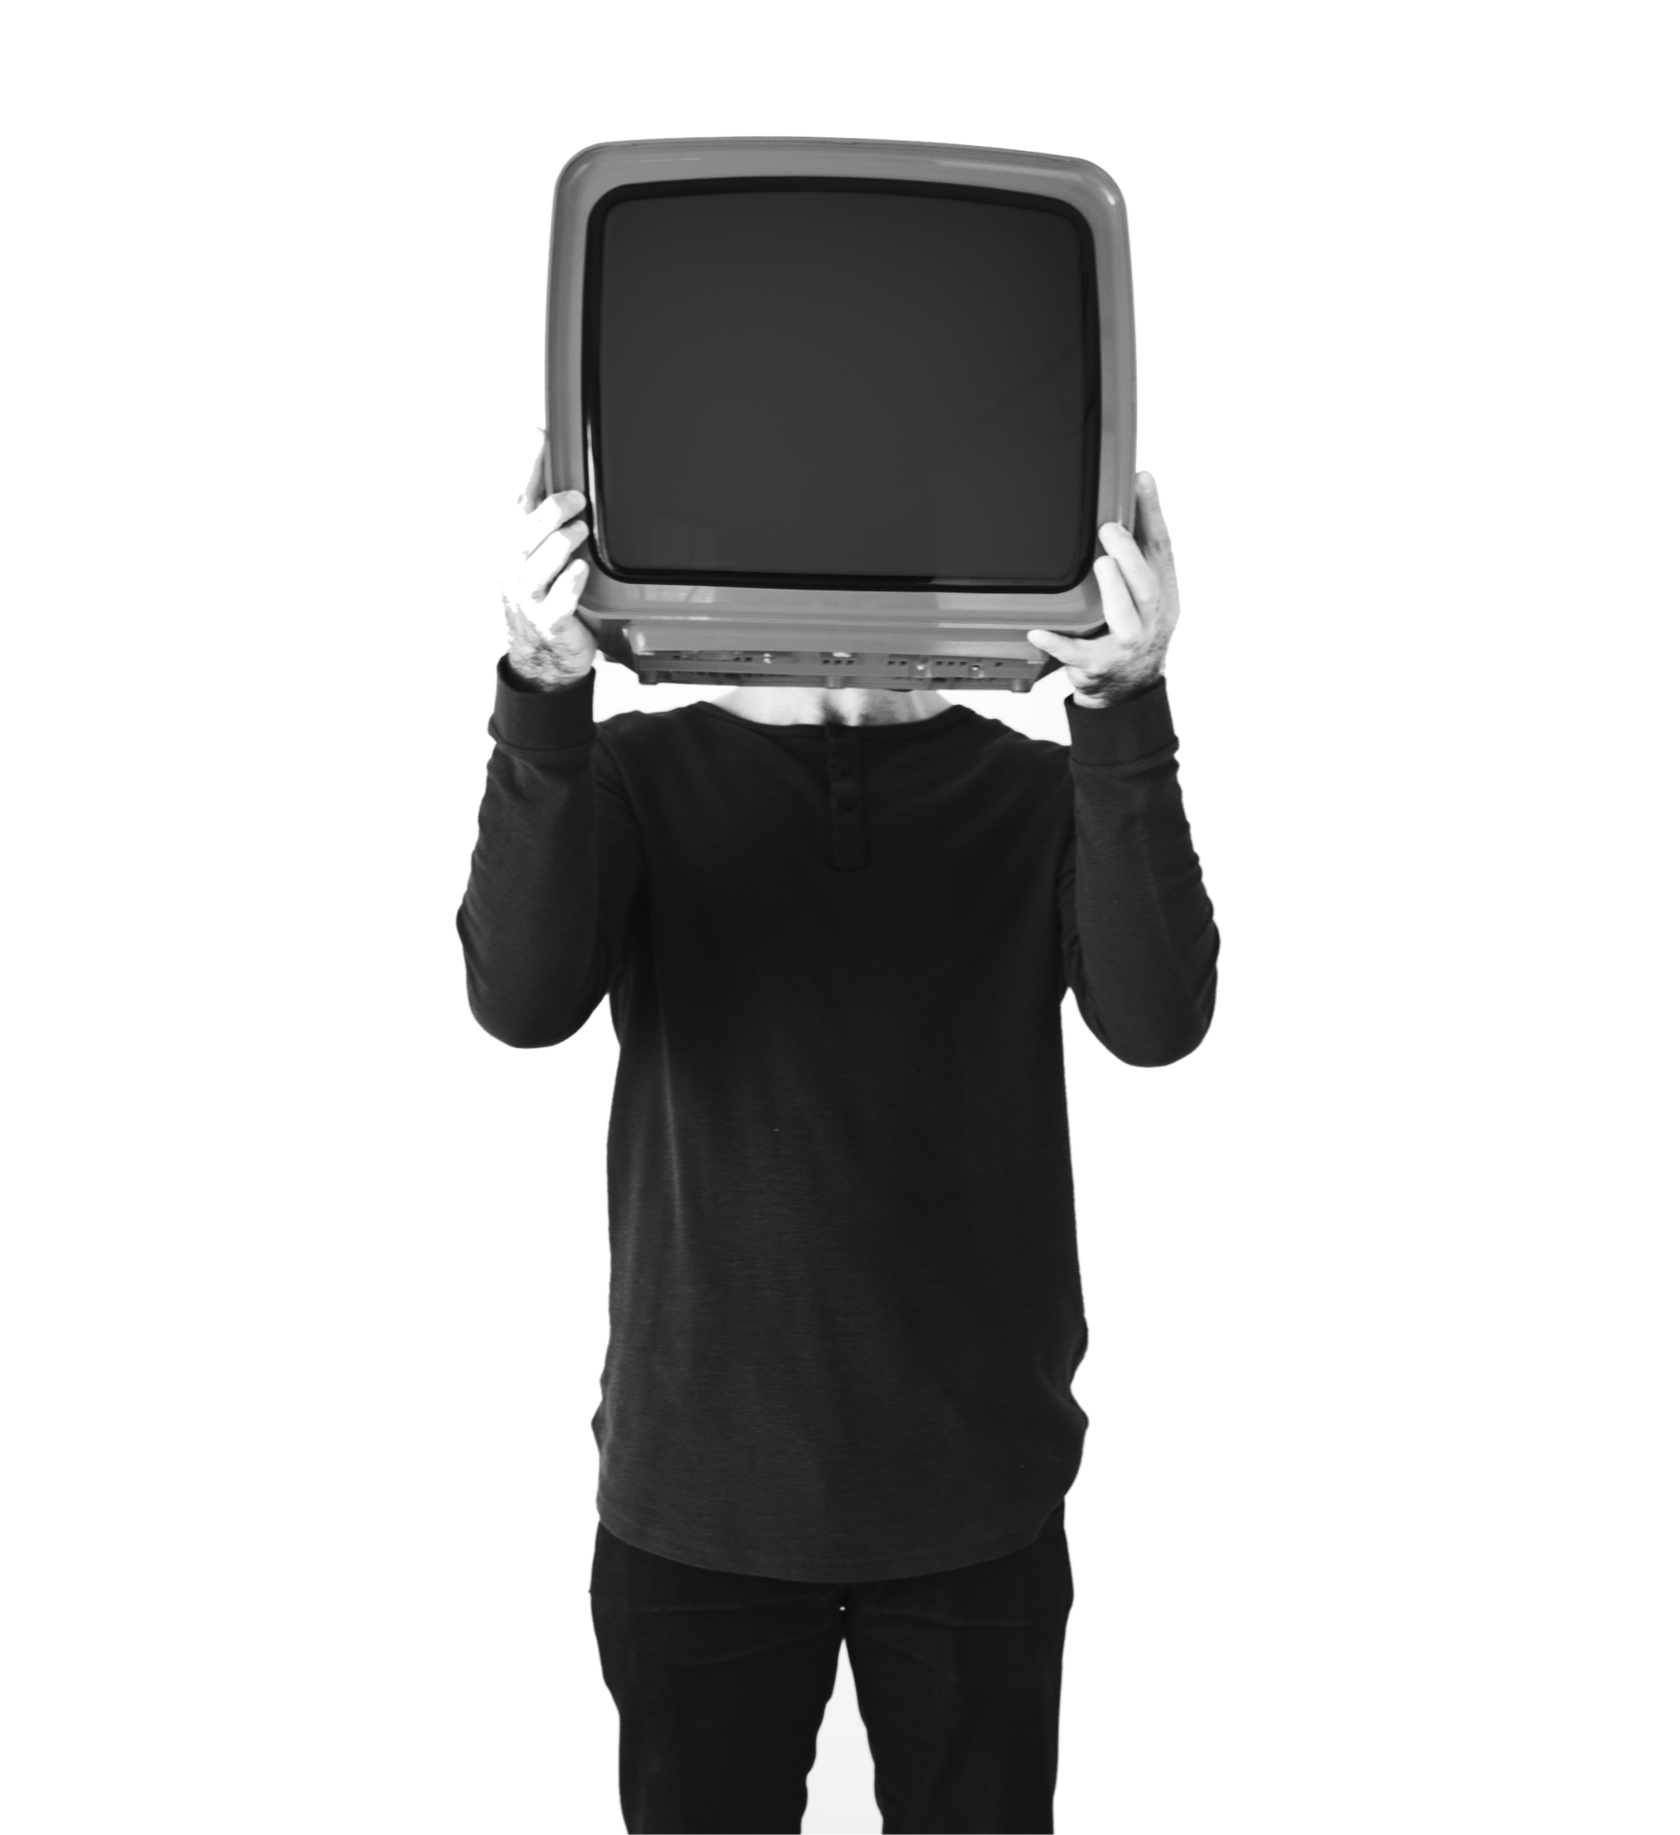 Фотку тв мена 3.0. Телевизор вместо головы. Человек телевизор. Человек держит телевизор. Мужчина с телевизором в руках.